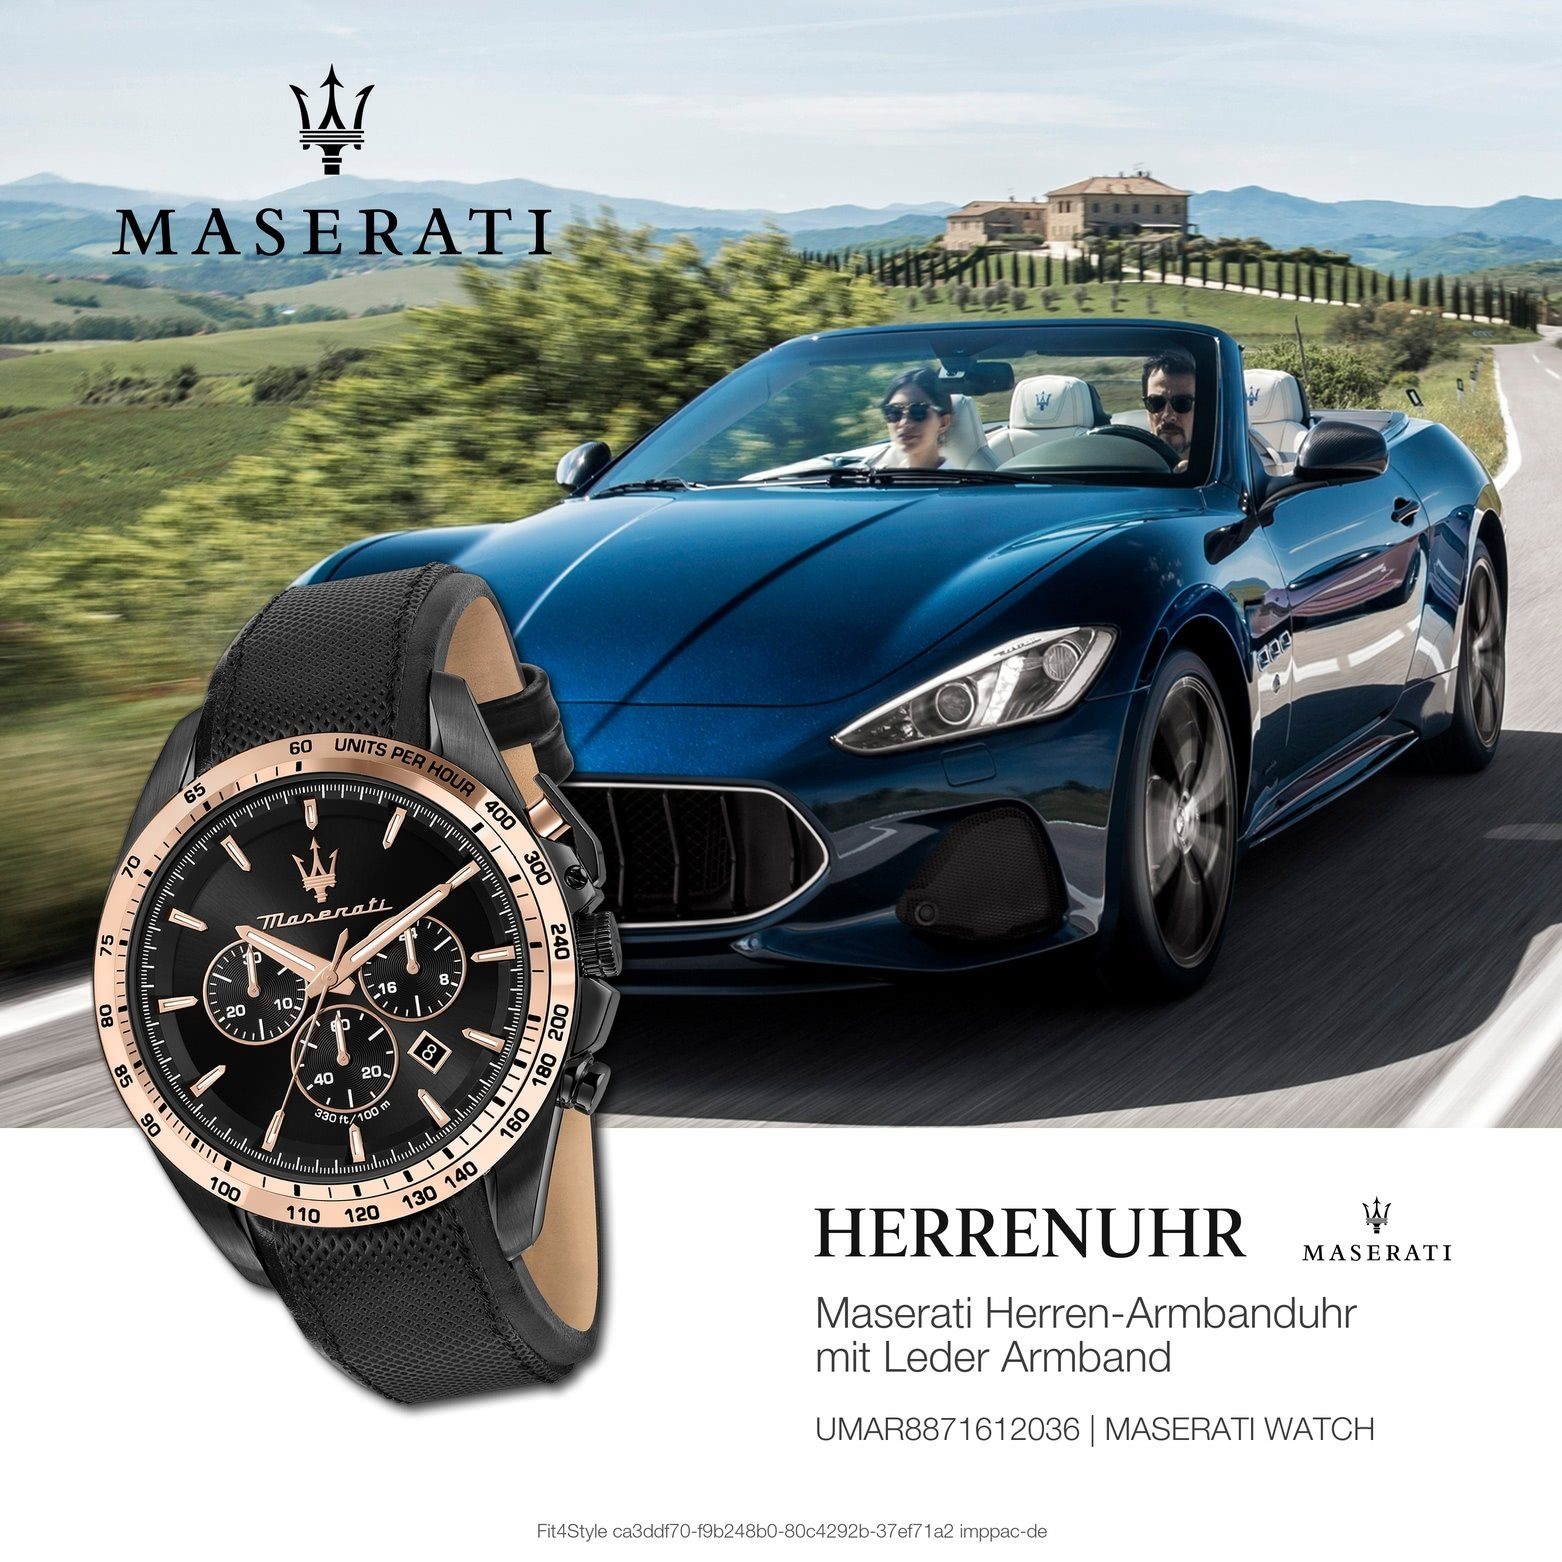 MASERATI Chronograph Maserati Herren Chronograph, rund, (ca. Made-In Italy Lederarmband, Herrenuhr groß 45mm)